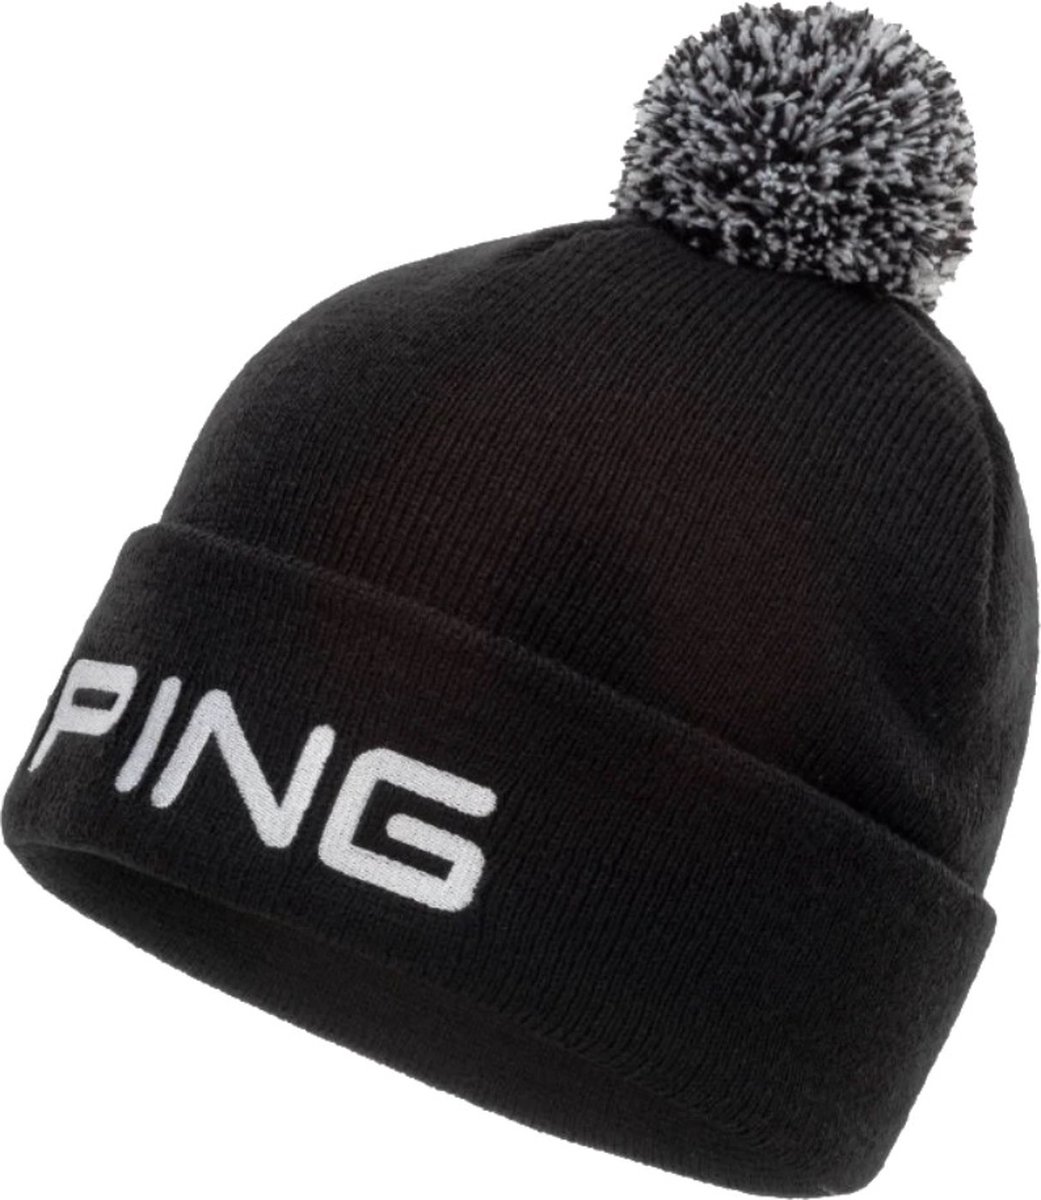 Ping Pom Pom Beanie - Zwart - One Size